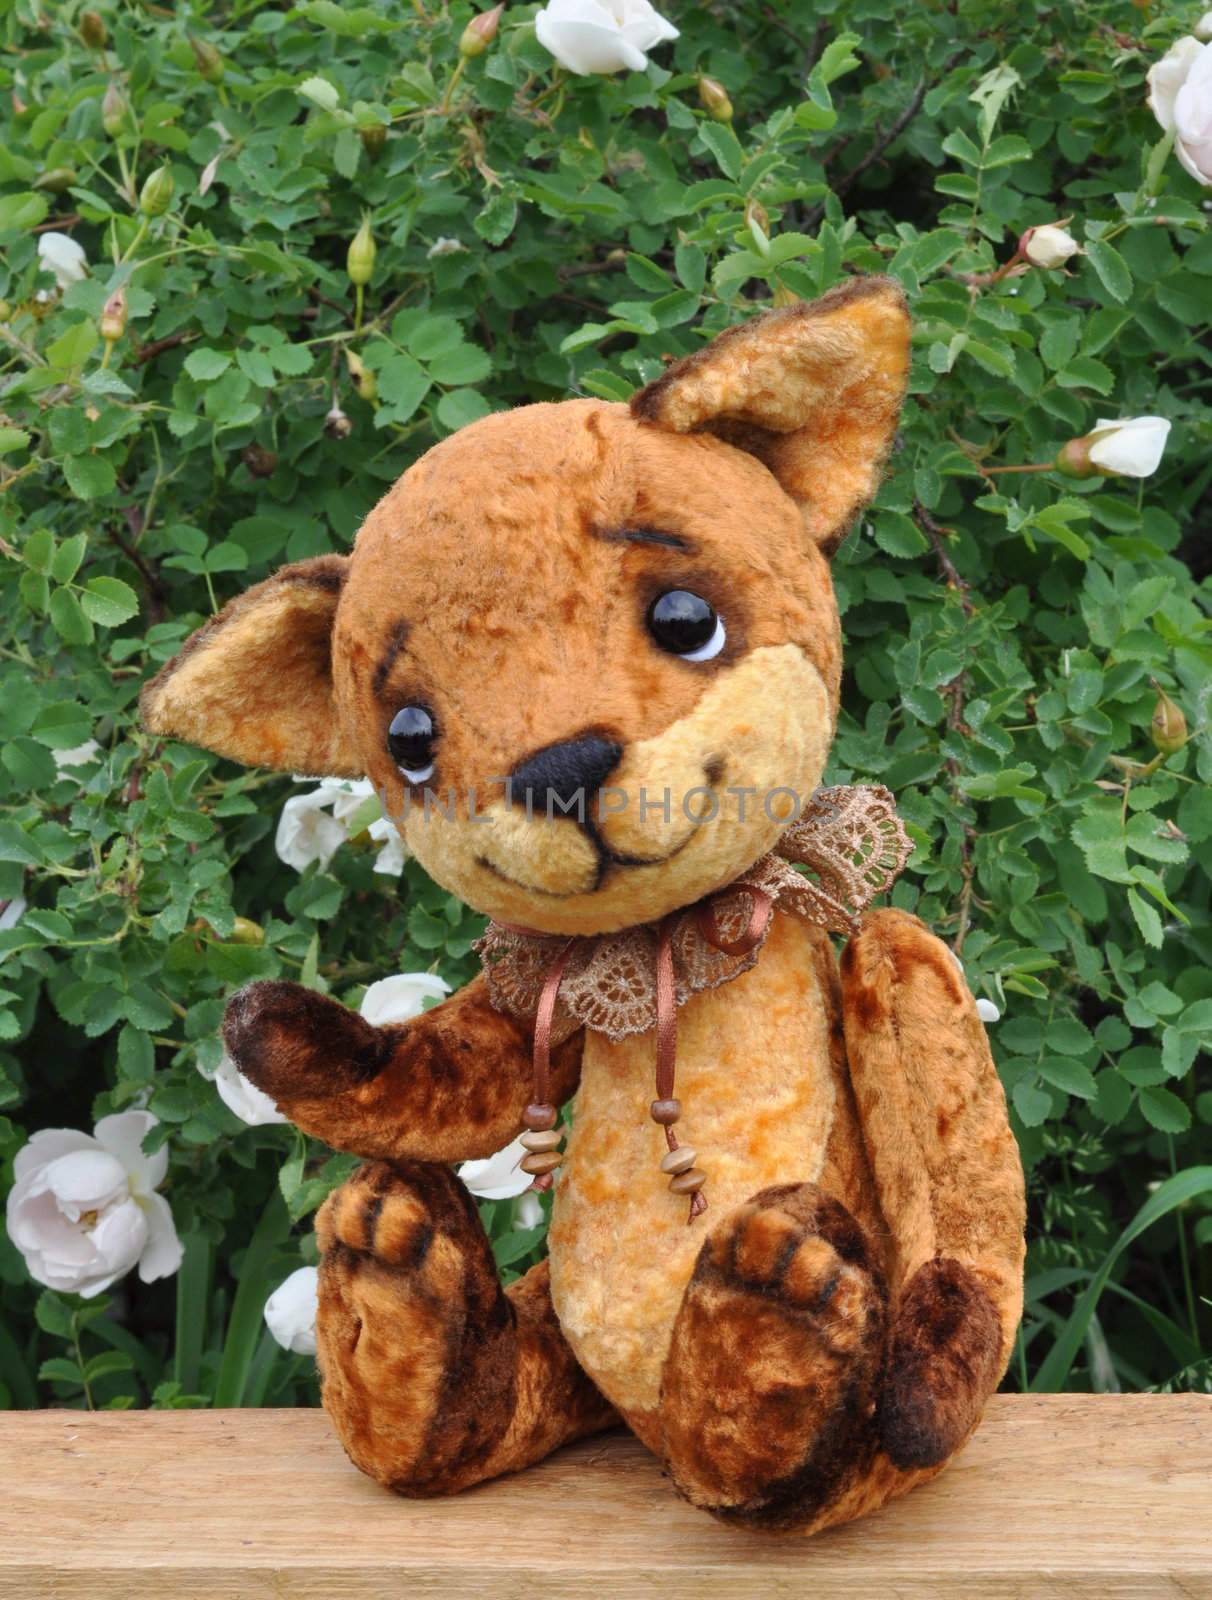 Ron fox cub by alexcoolok